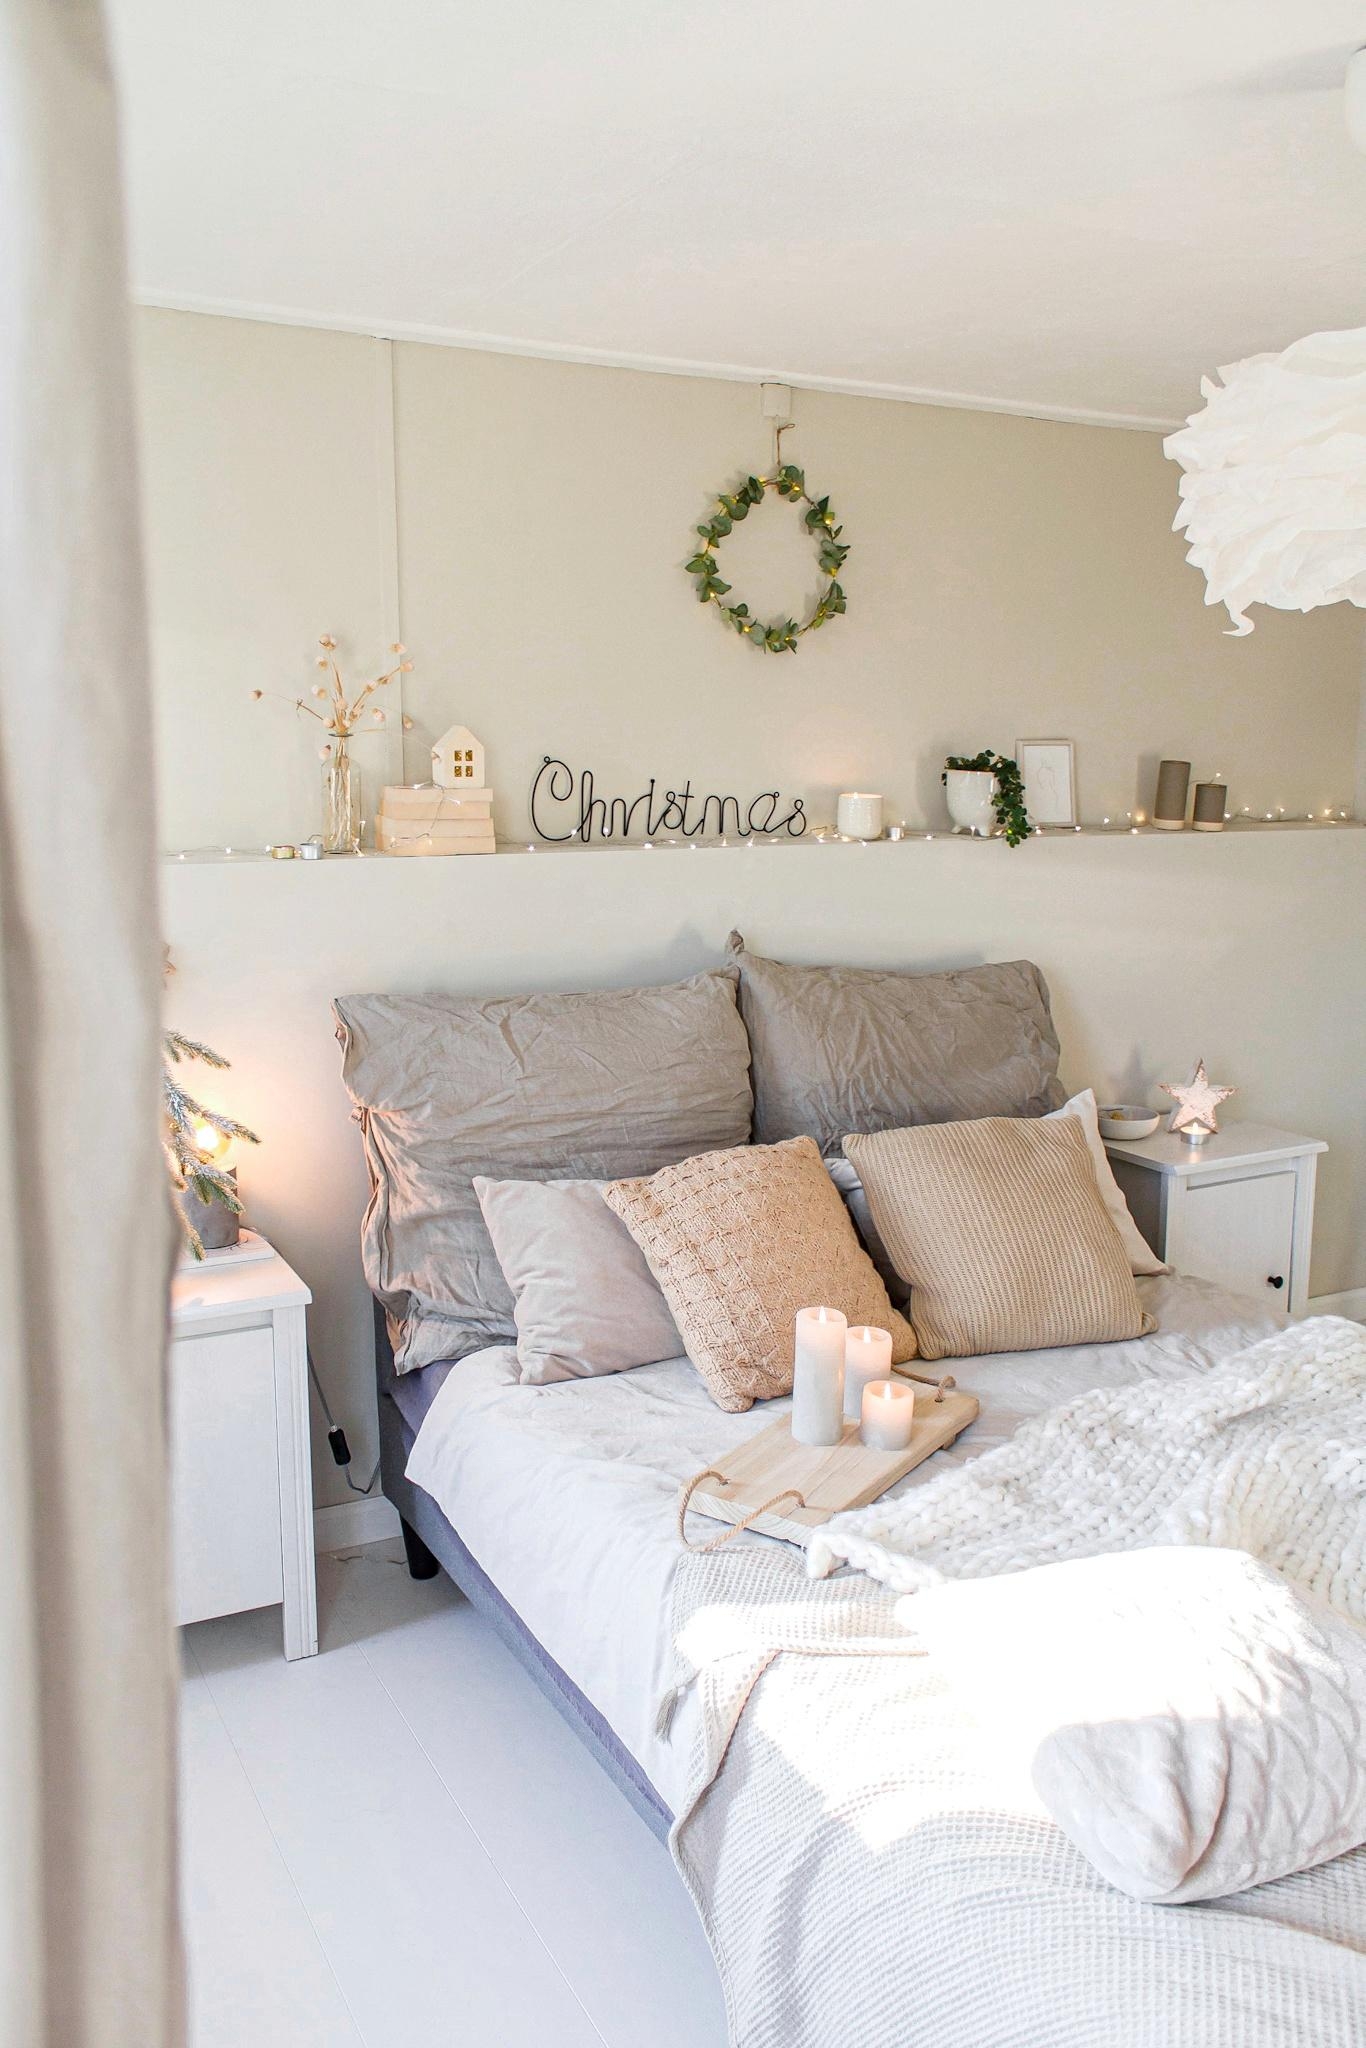 Schönen Nikolaustag! 🎅
#schlafzimmer #hygge #weihnachten #weihnachtsdeko #kranz #kerzen #bett #bettwäsche #adventsdeko 